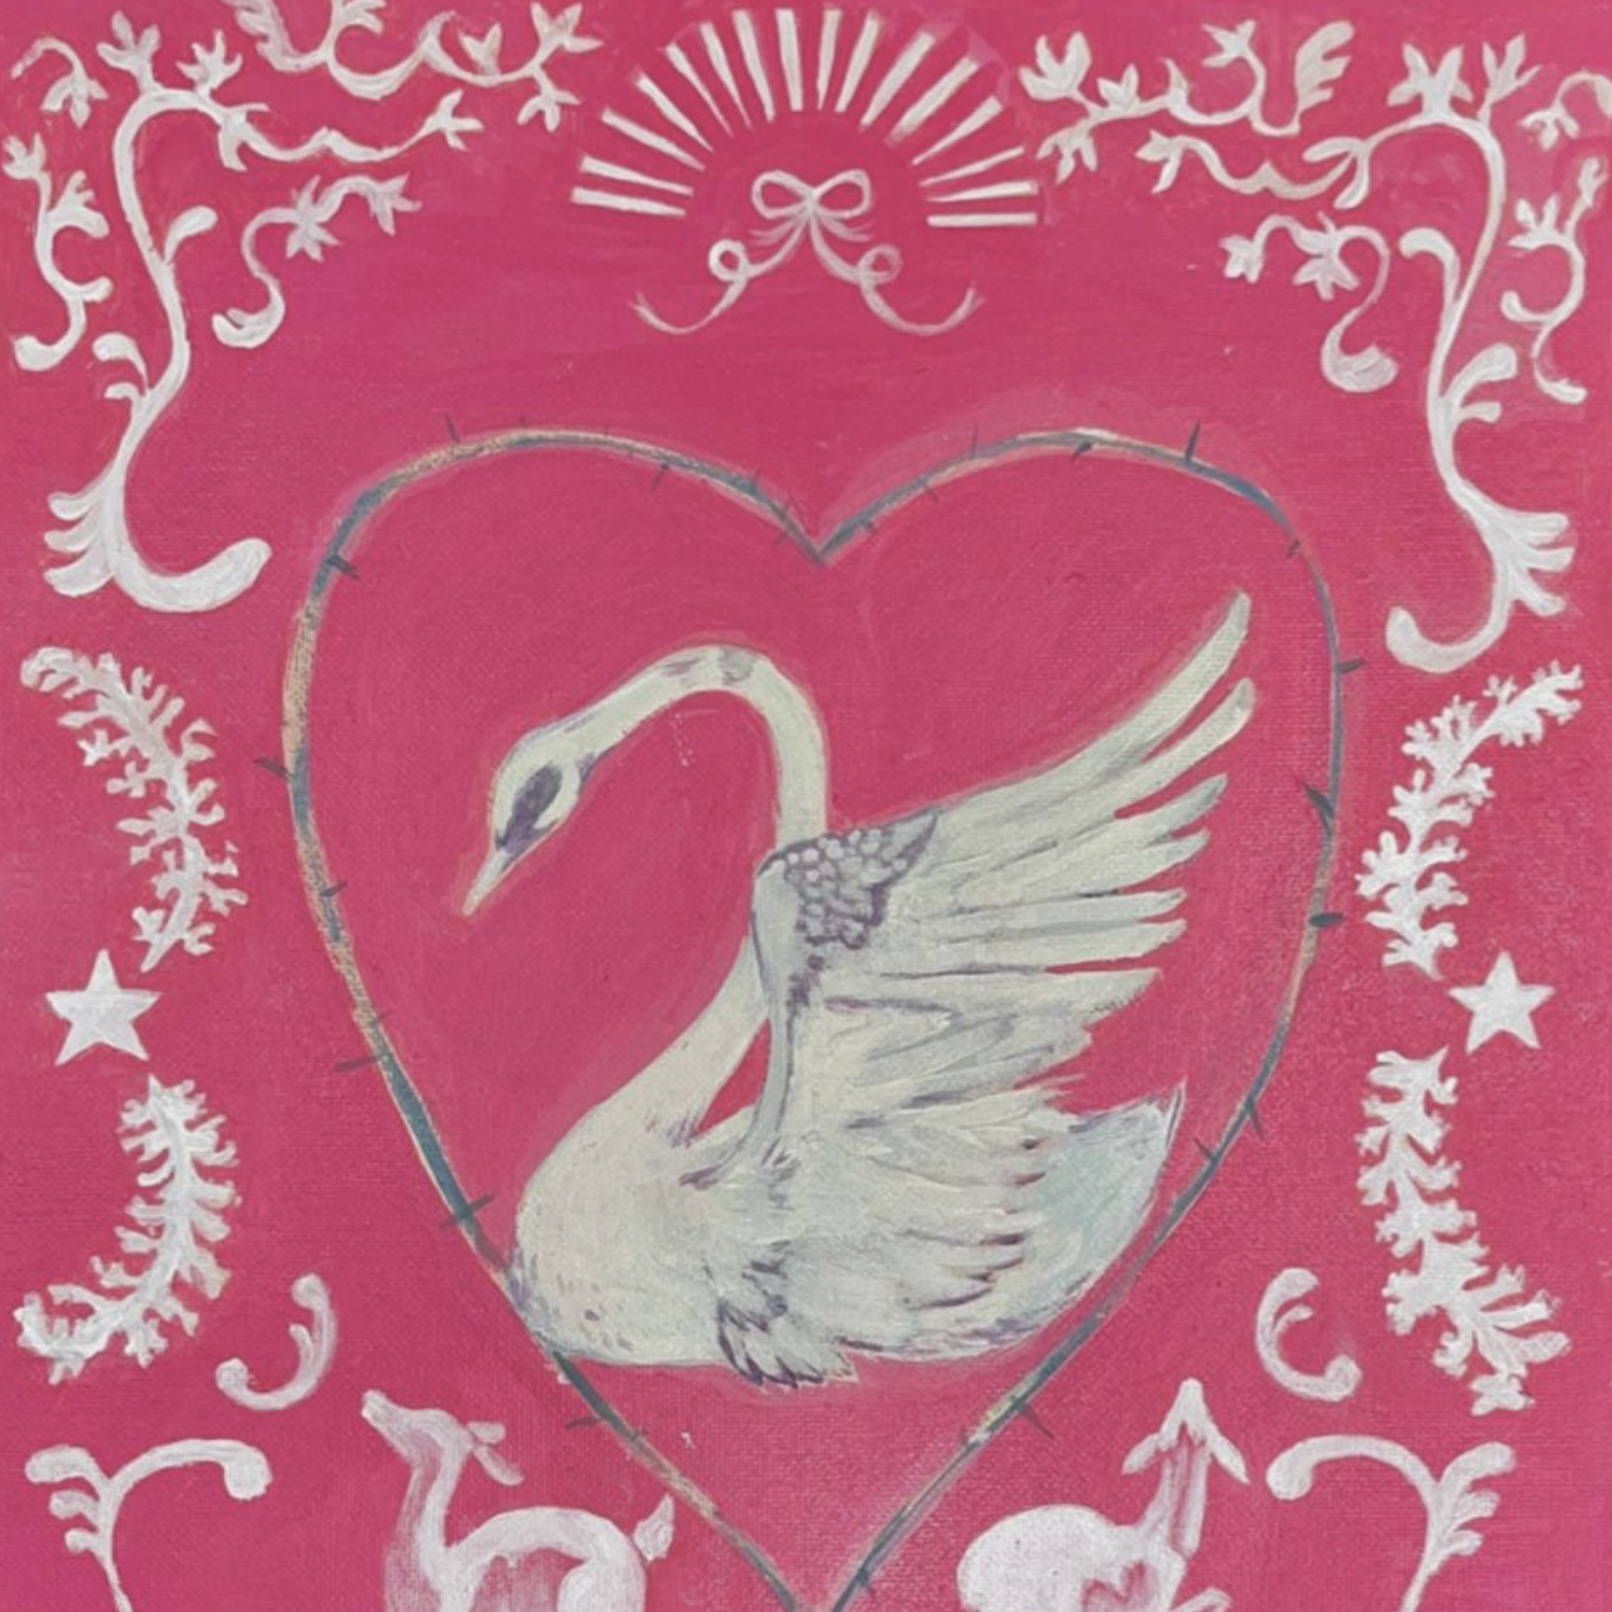 Illustration of Swan